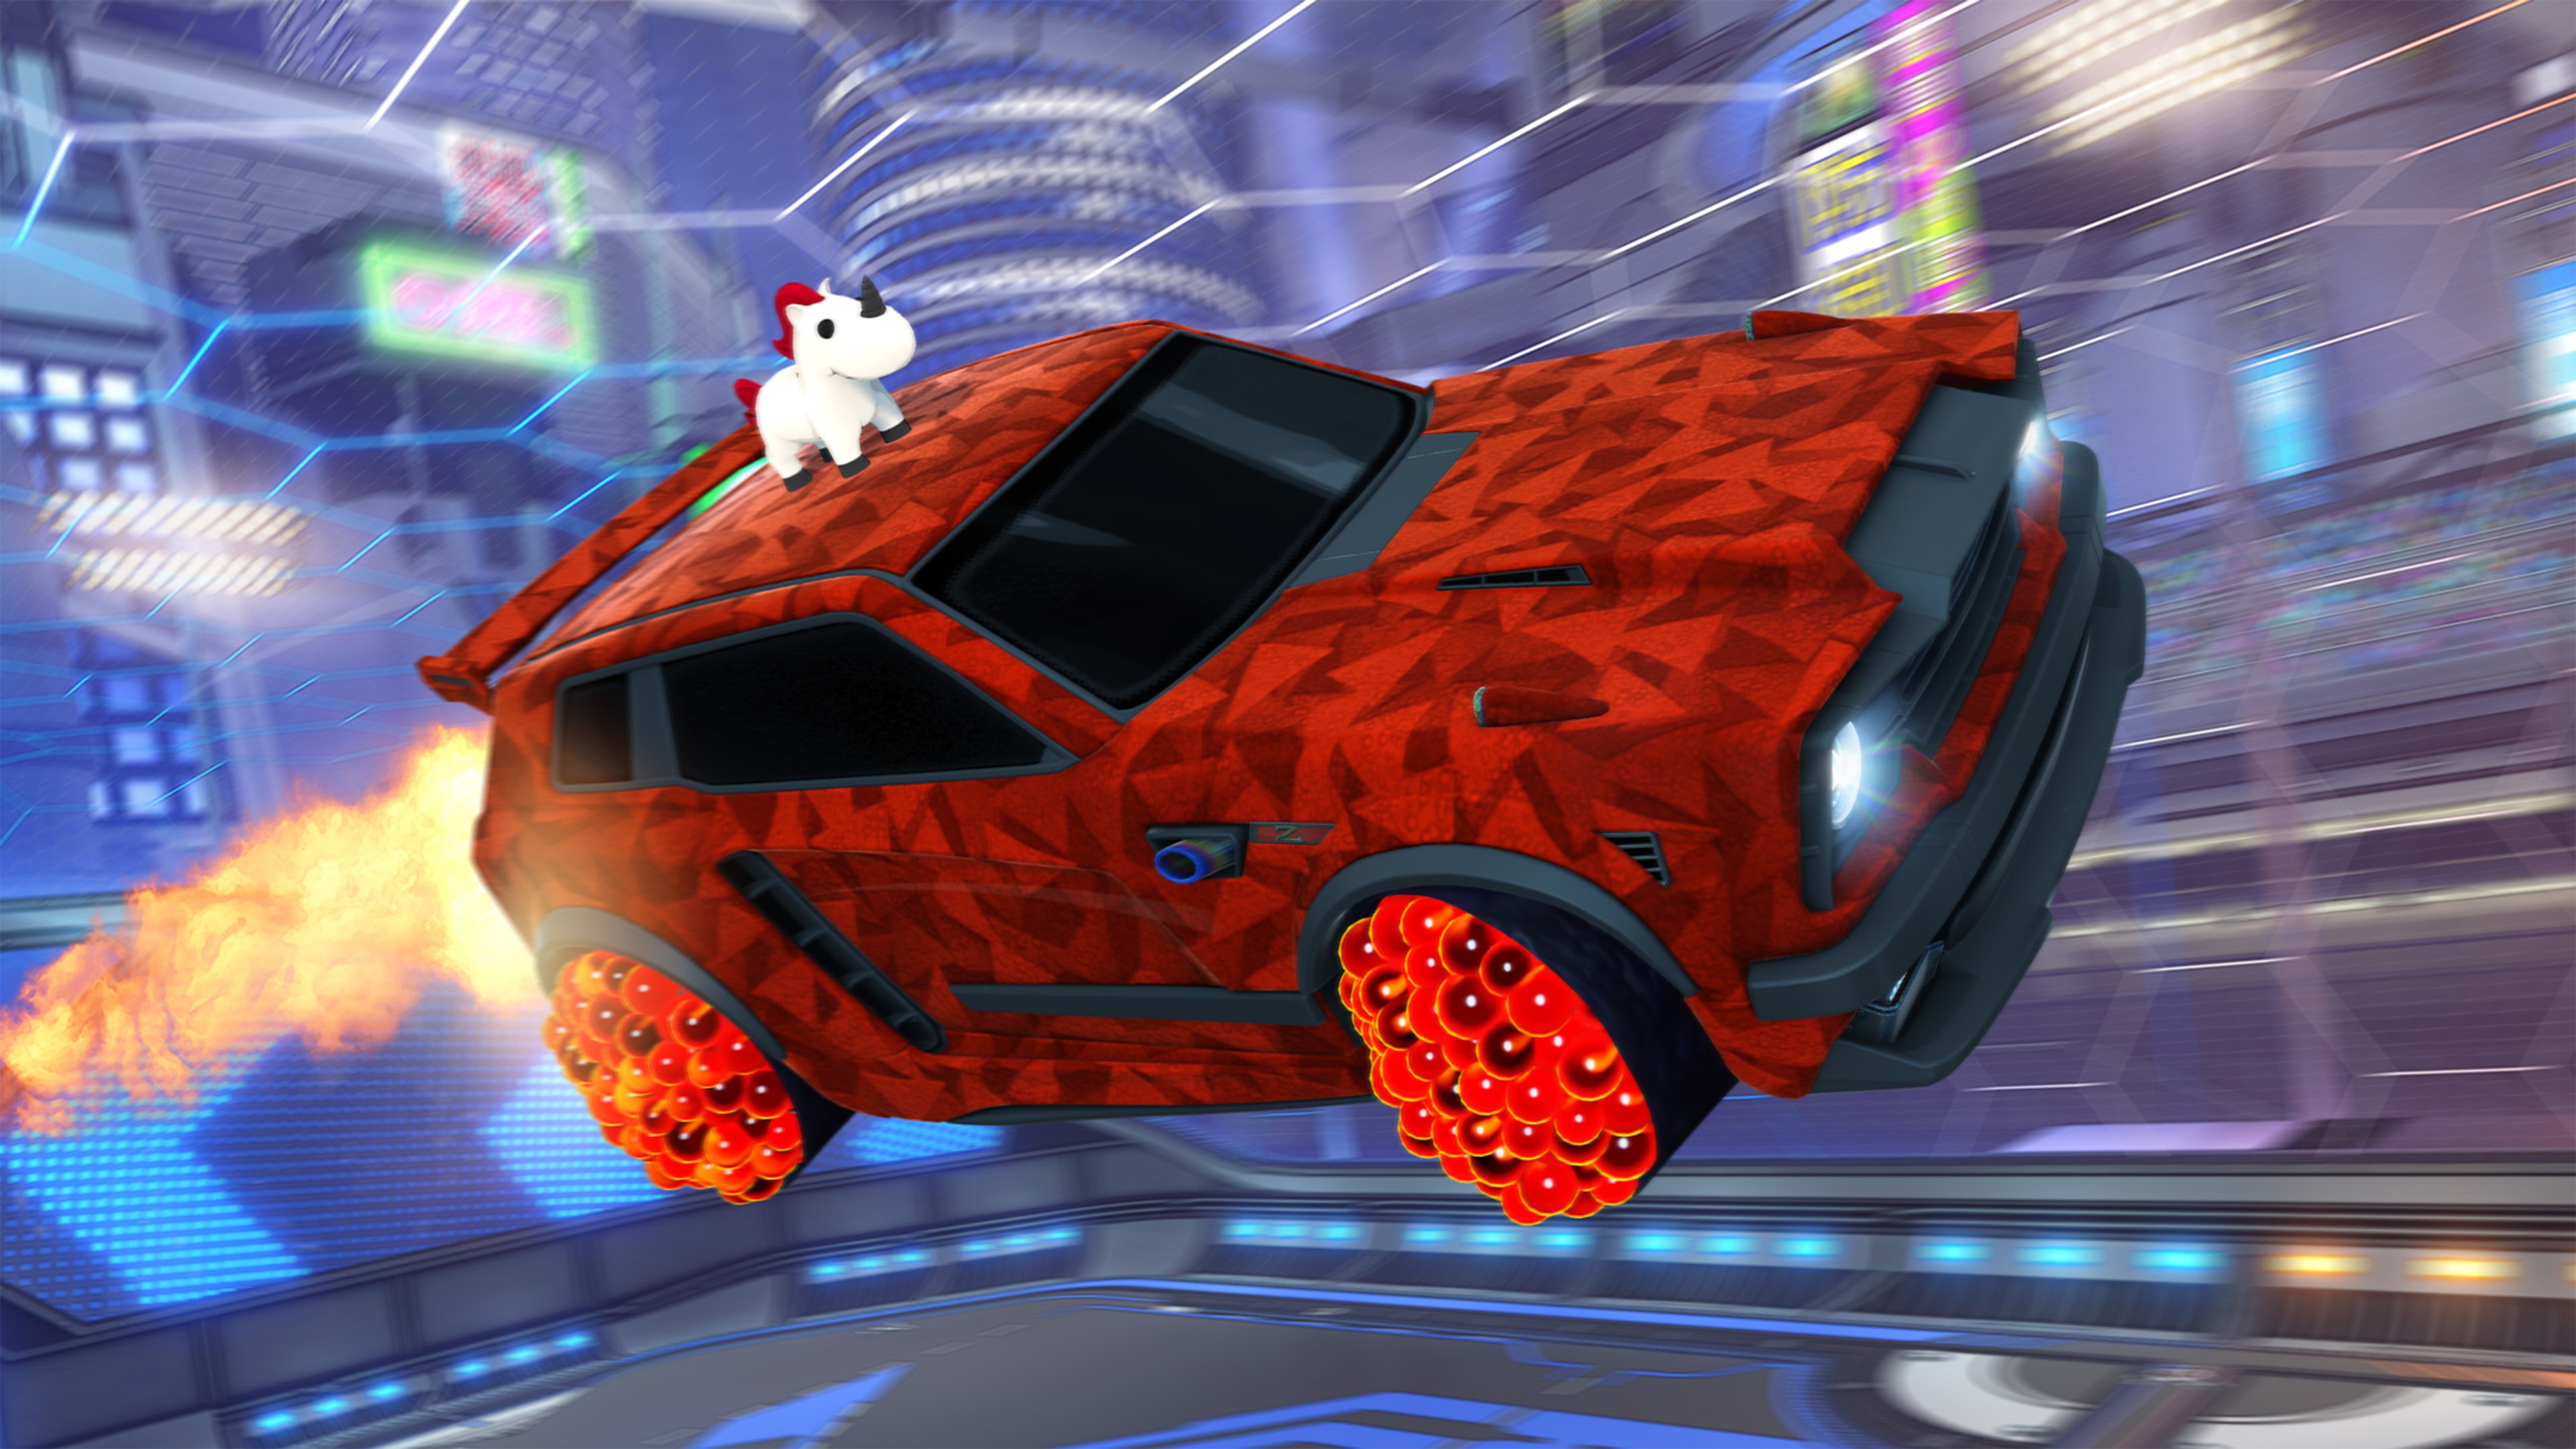 Rocket League - Istantanea della schermata che mostra un'auto con un animale simile a un unicorno sul tettuccio e decorazioni geometriche di colore rosso